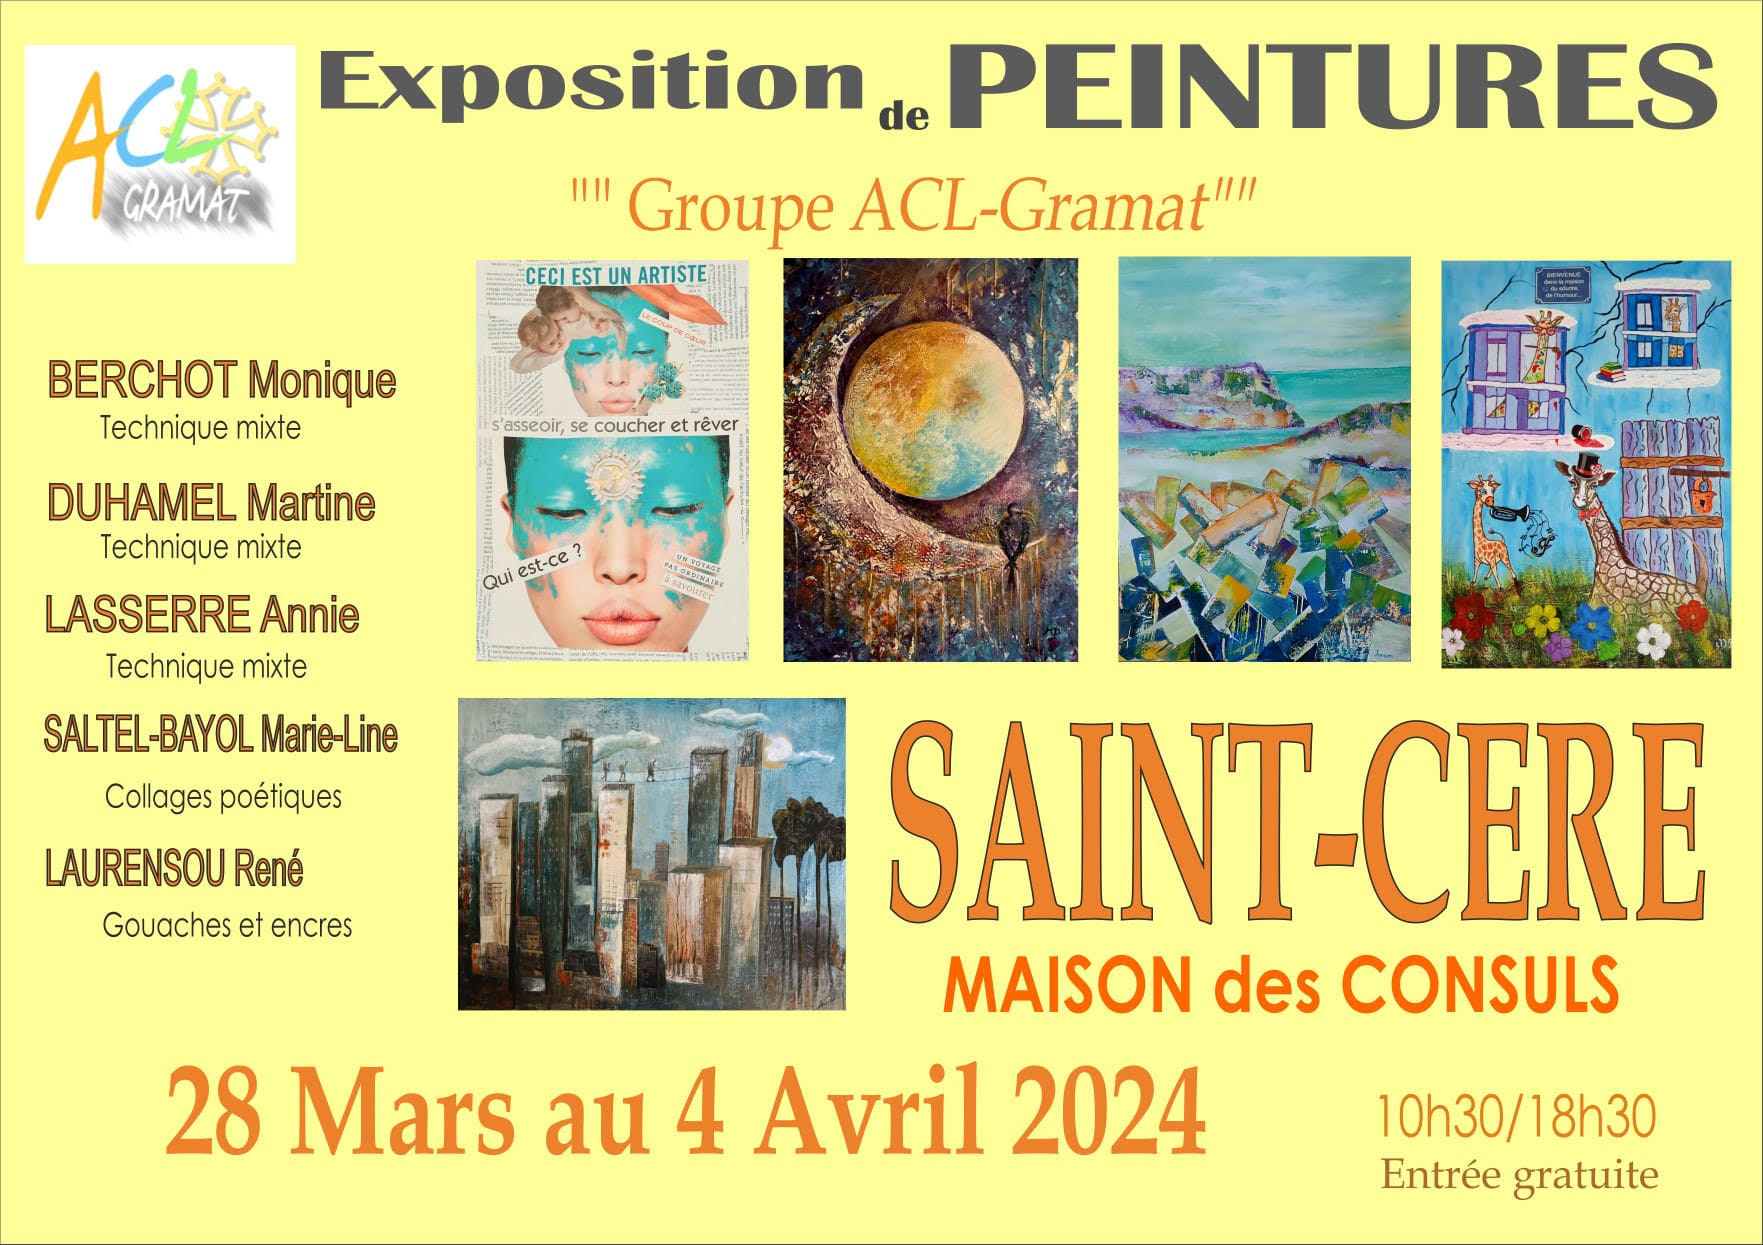 Figeac : Exposition de Peintures<br />
Groupe ACL -Gramat